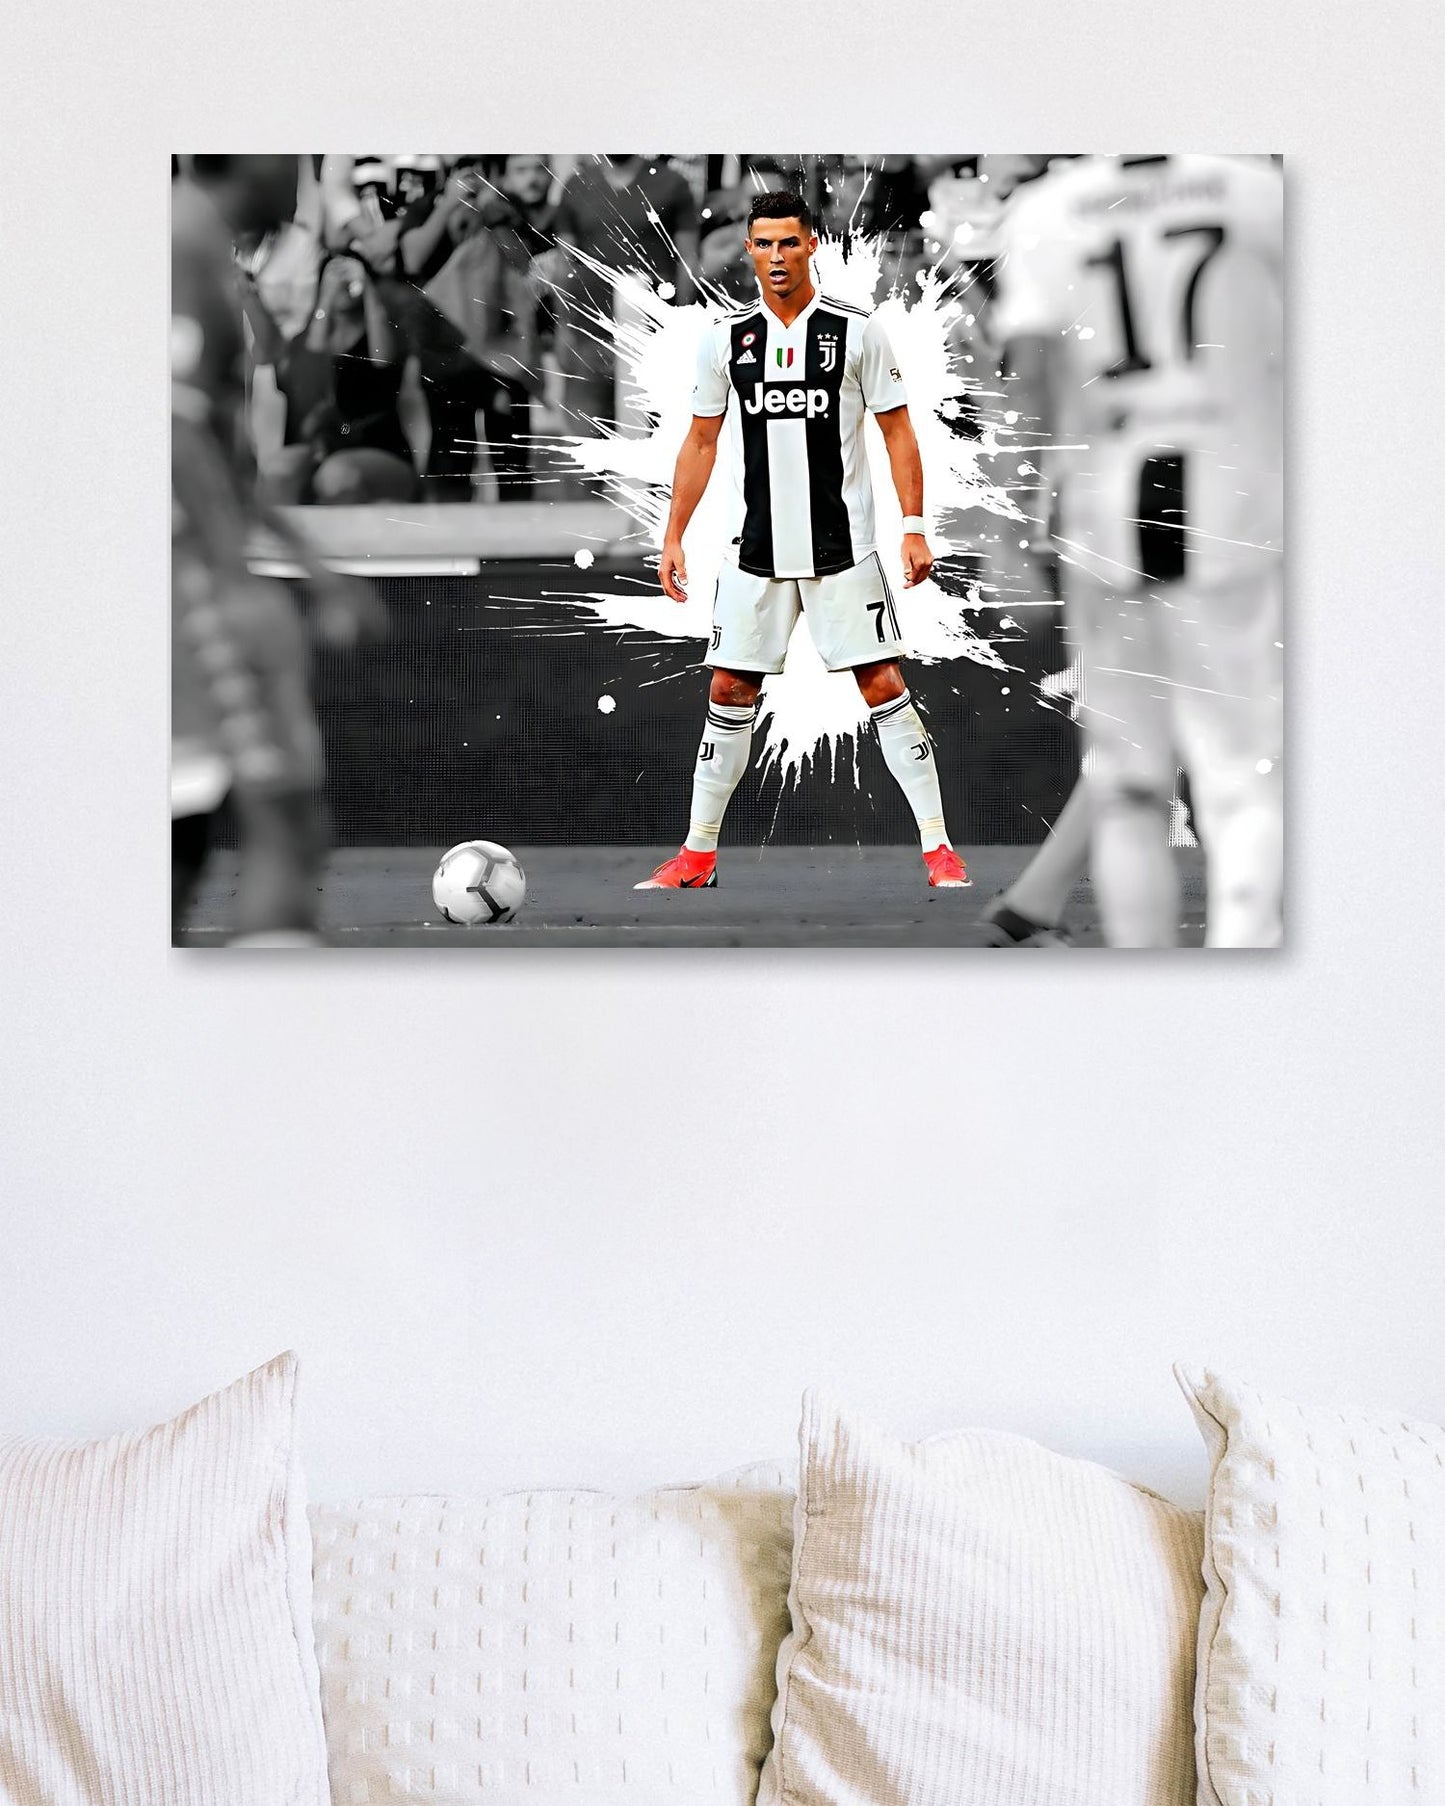 Cristiano Ronaldo_10 - @LuckyLuke